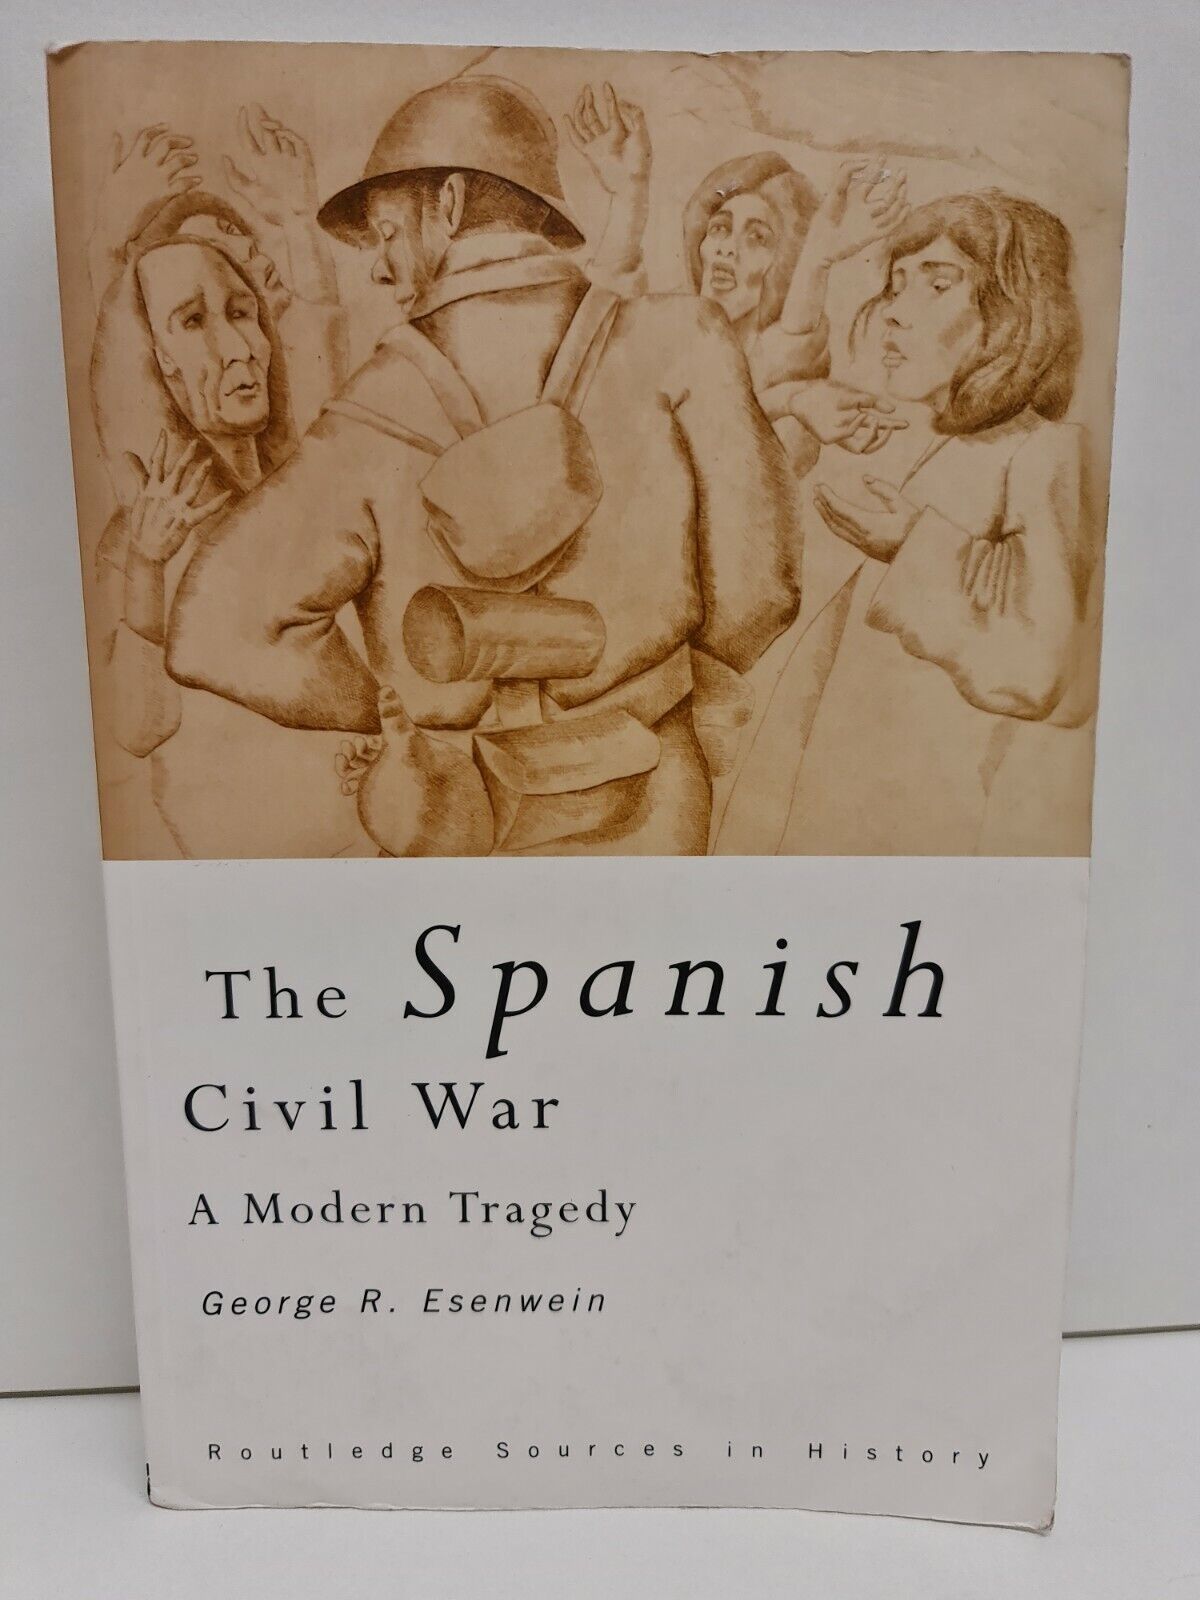 The Spanish Civil War: A Modern Tragedy by George R. Esenwein (2005)